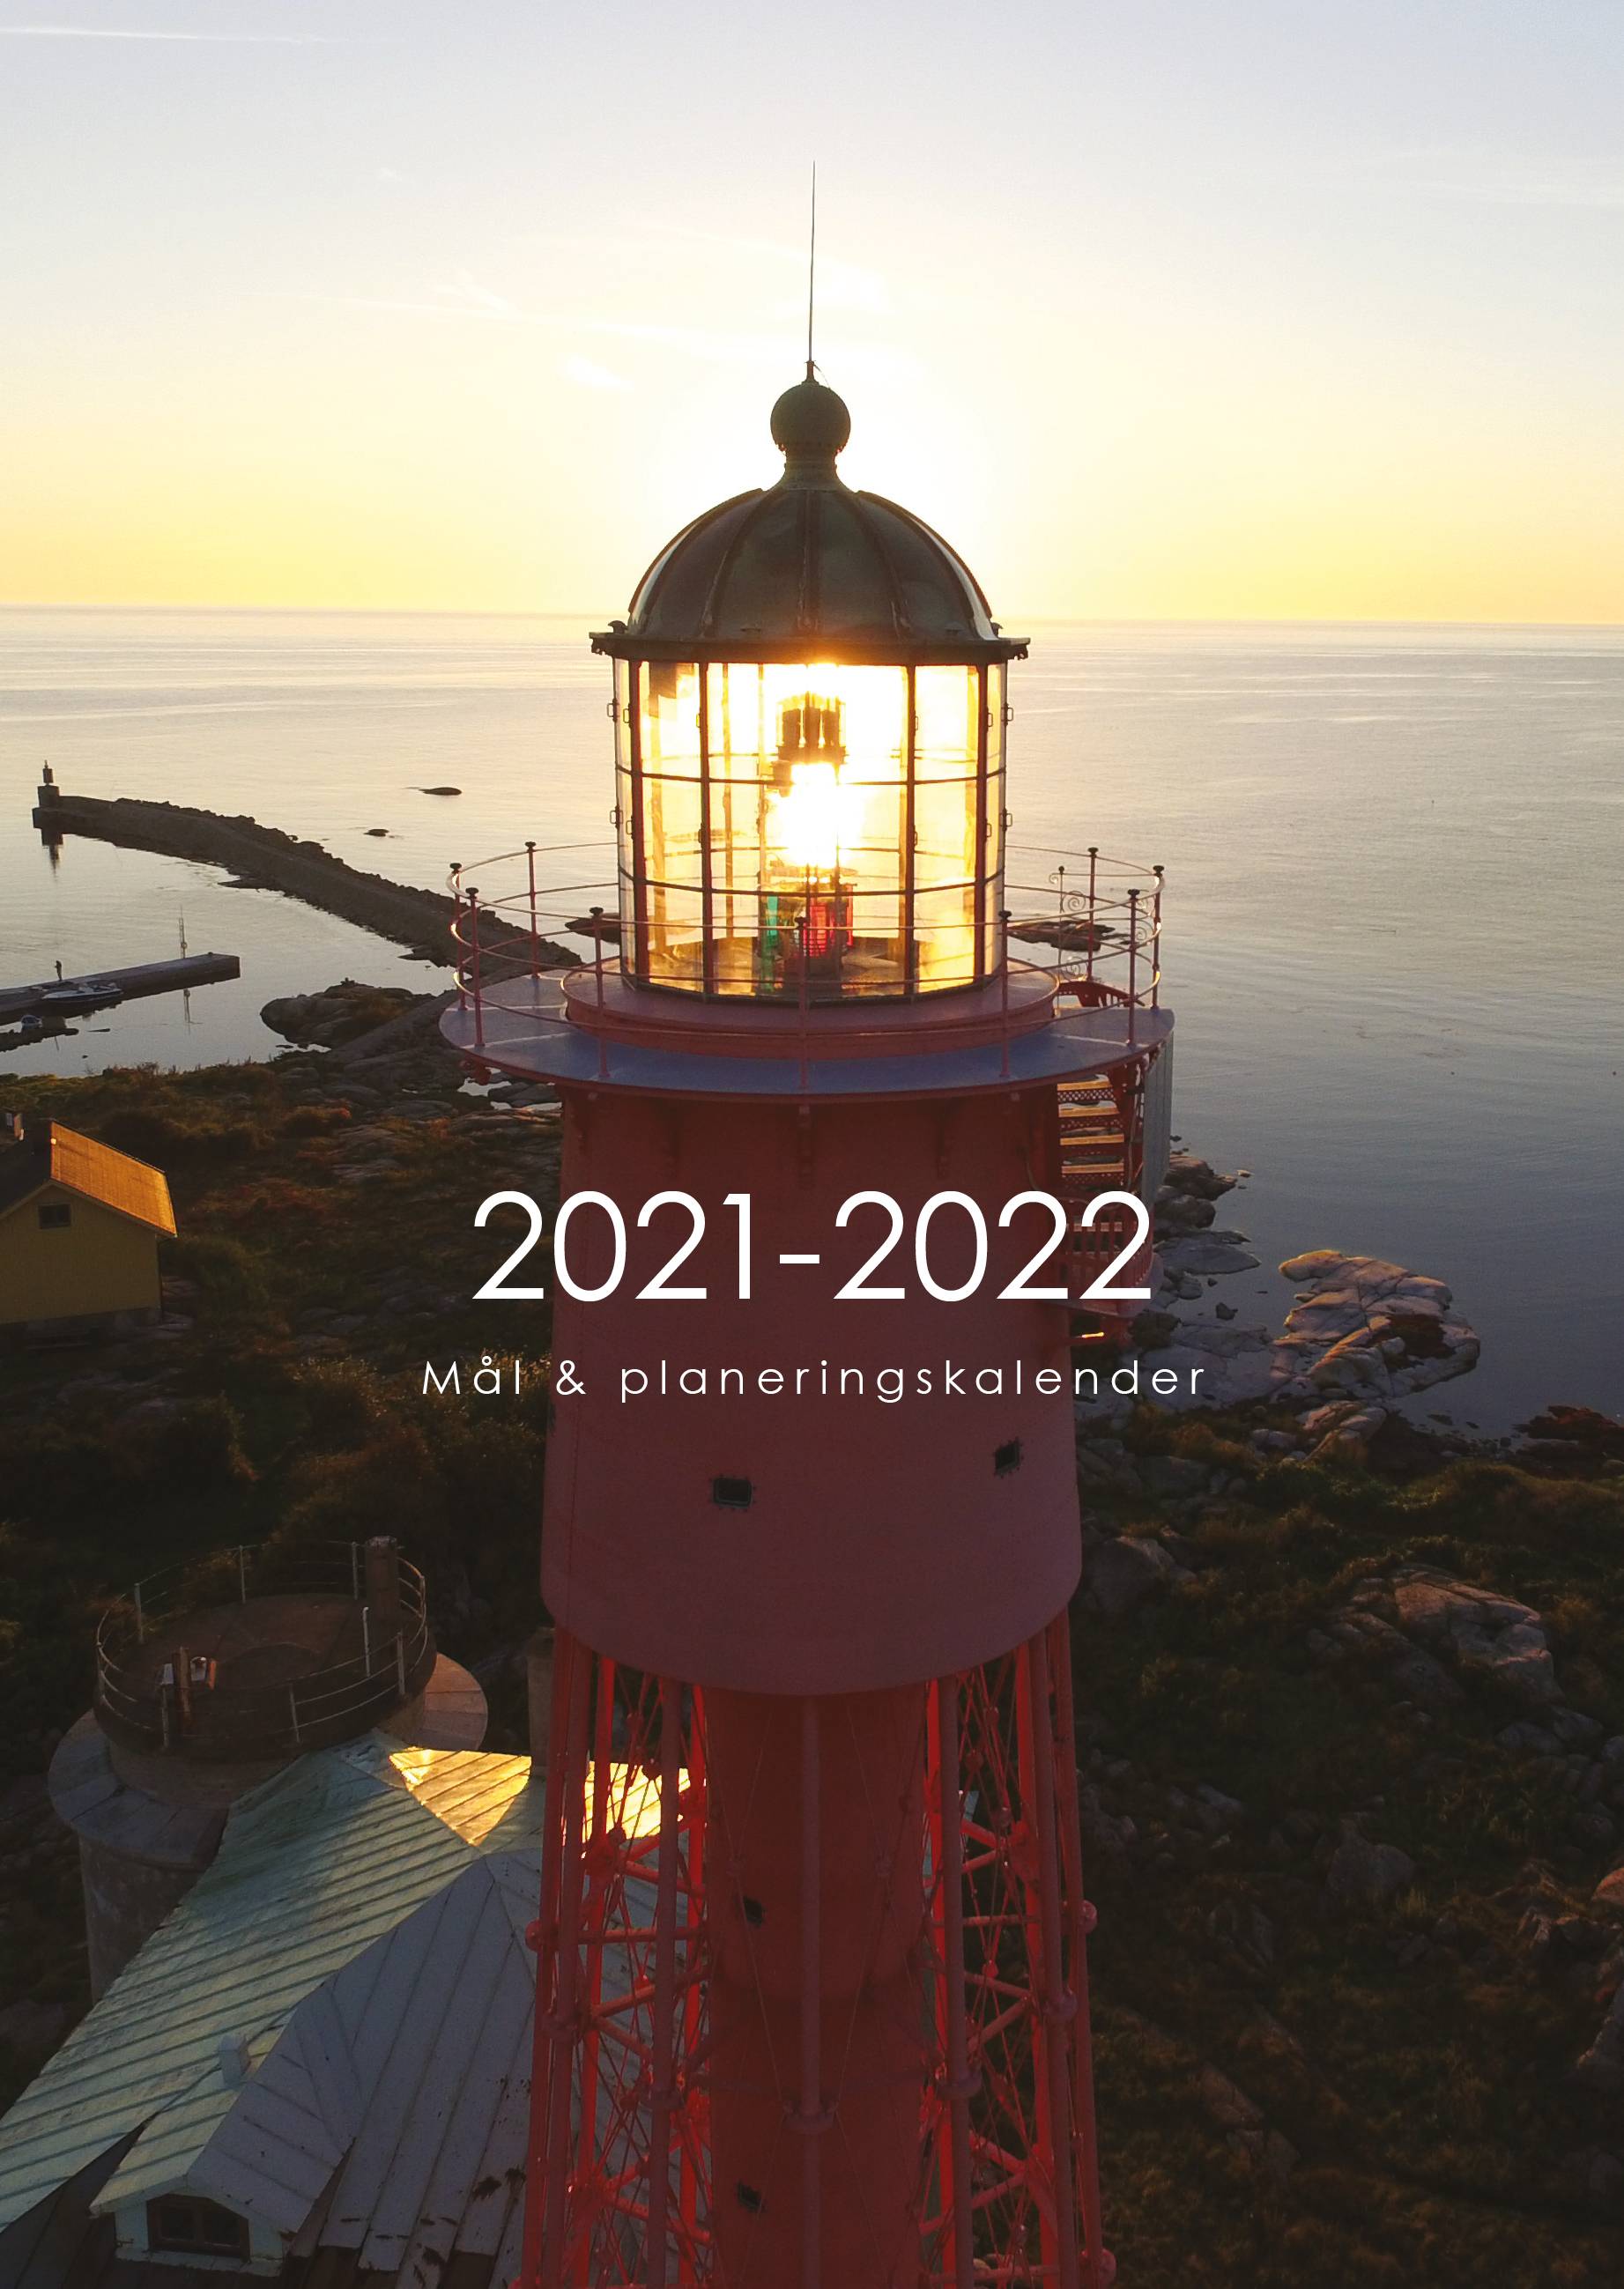 2021-2022 mål & planeringskalender